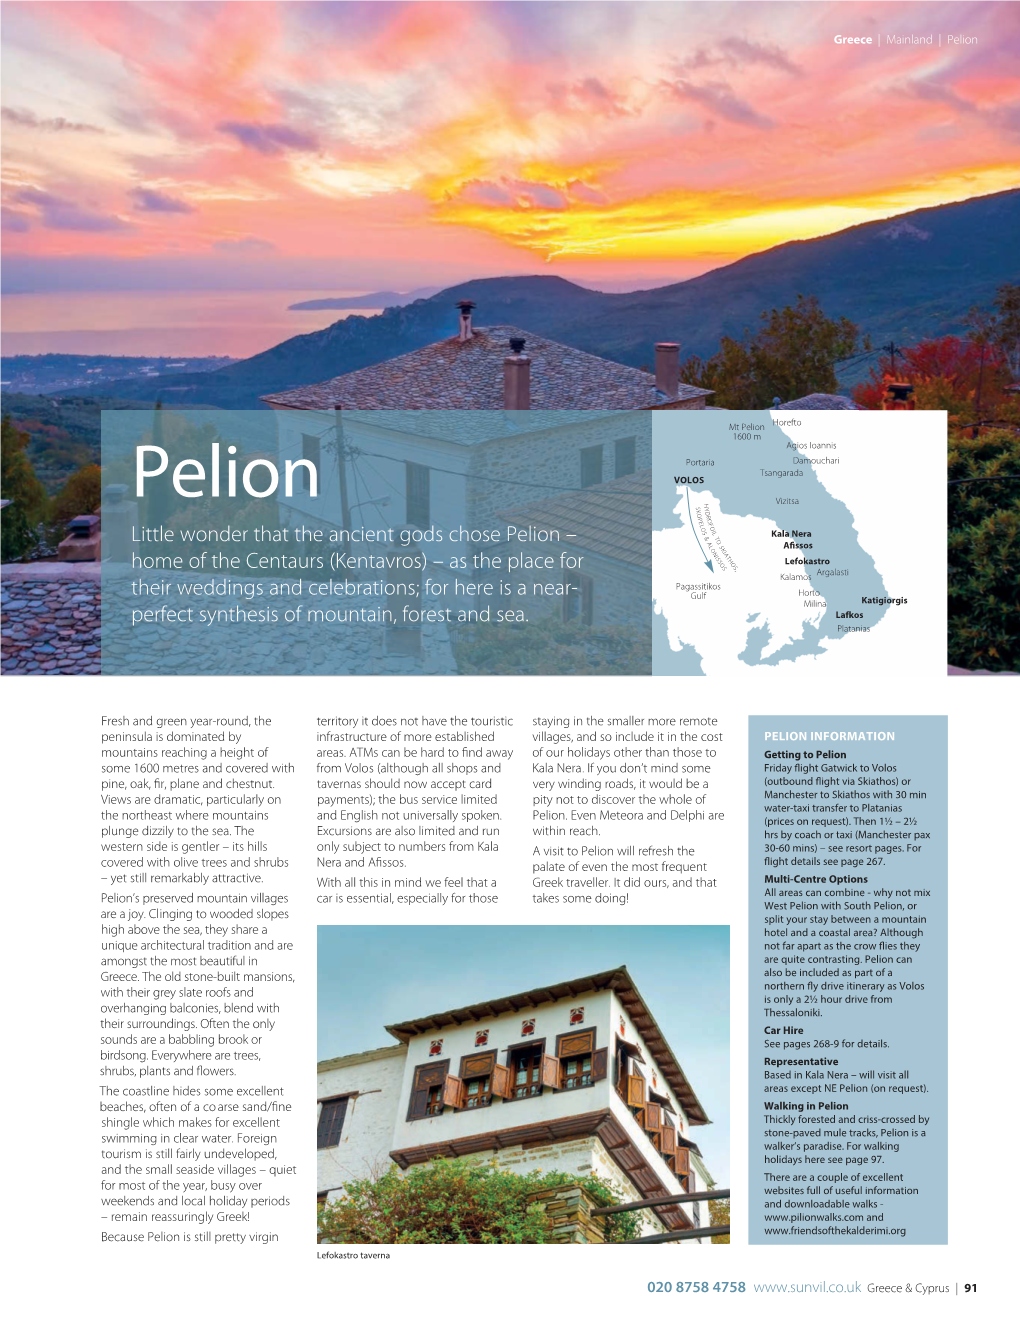 Pelion.Qxp 23/11/2019 14:23 Page 91